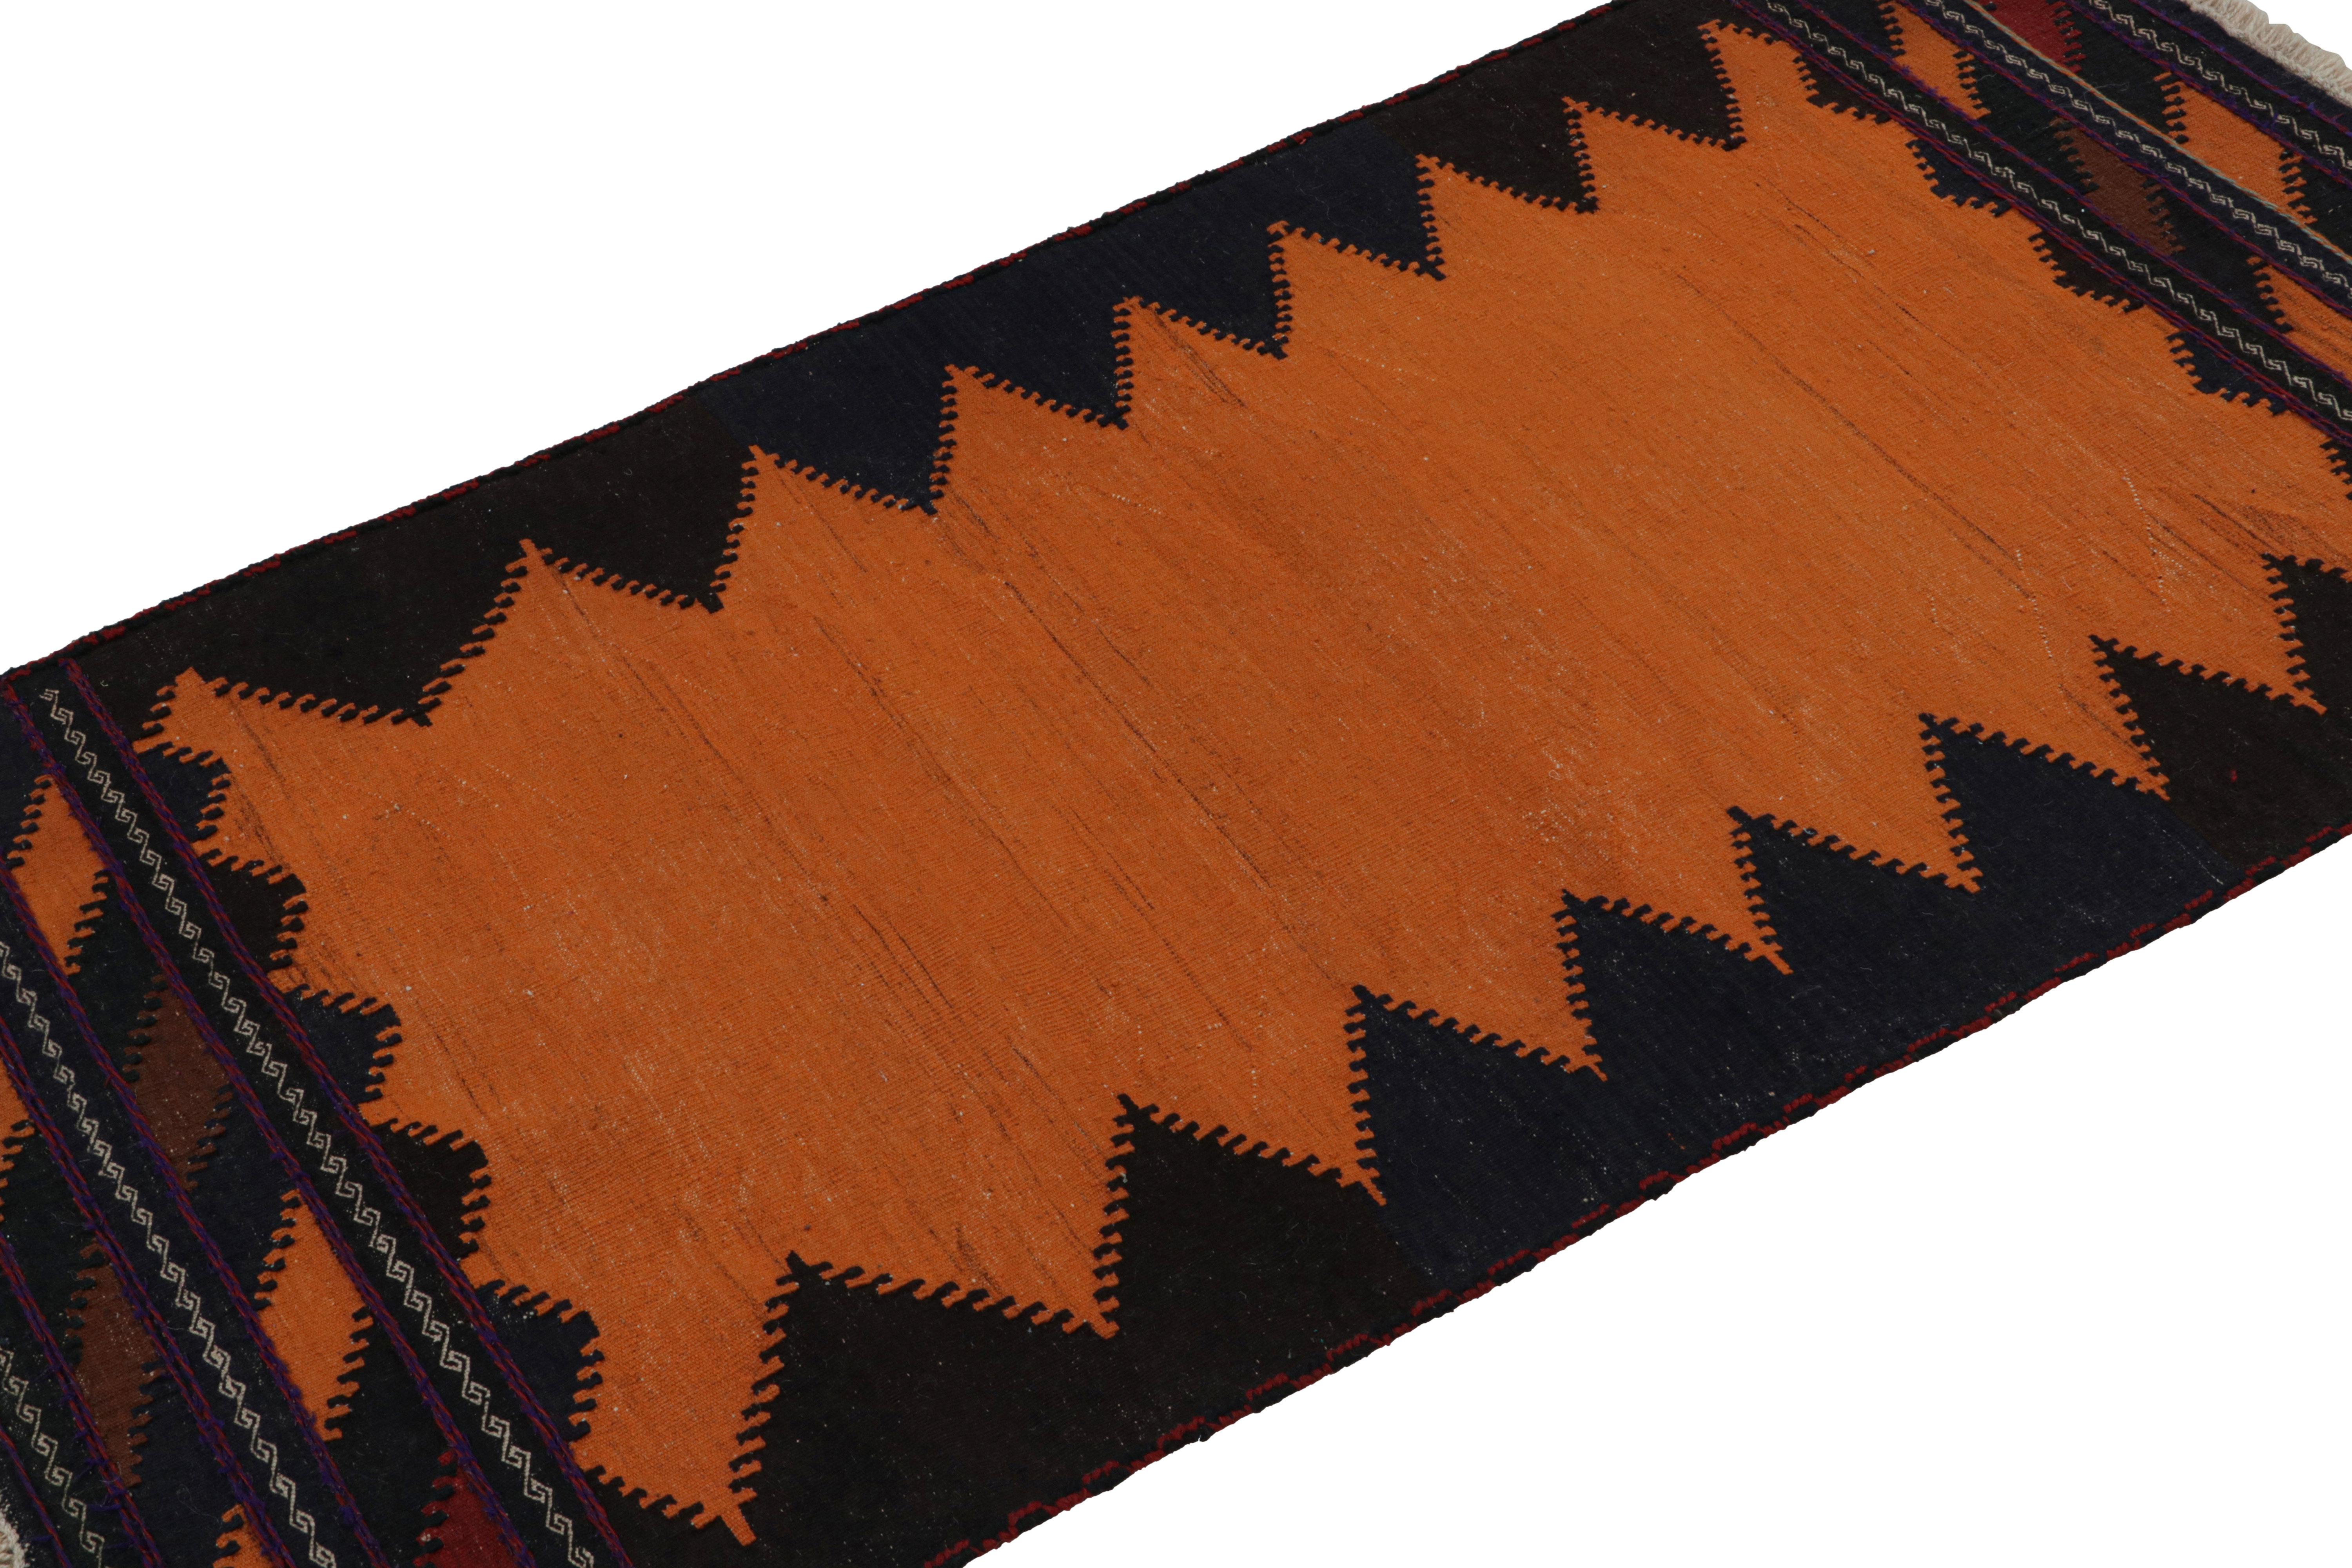 Dieser handgewebte afghanische 3x5-Stammes-Kilim aus Wolle (ca. 1950-1960) ist eine exquisite Ergänzung der Rug & Kilim-Kollektion im Stammesstil.  

Über das Design: 

Dieses Tribal-Stück zeigt ein offenes Feld in warmem Orange, das von